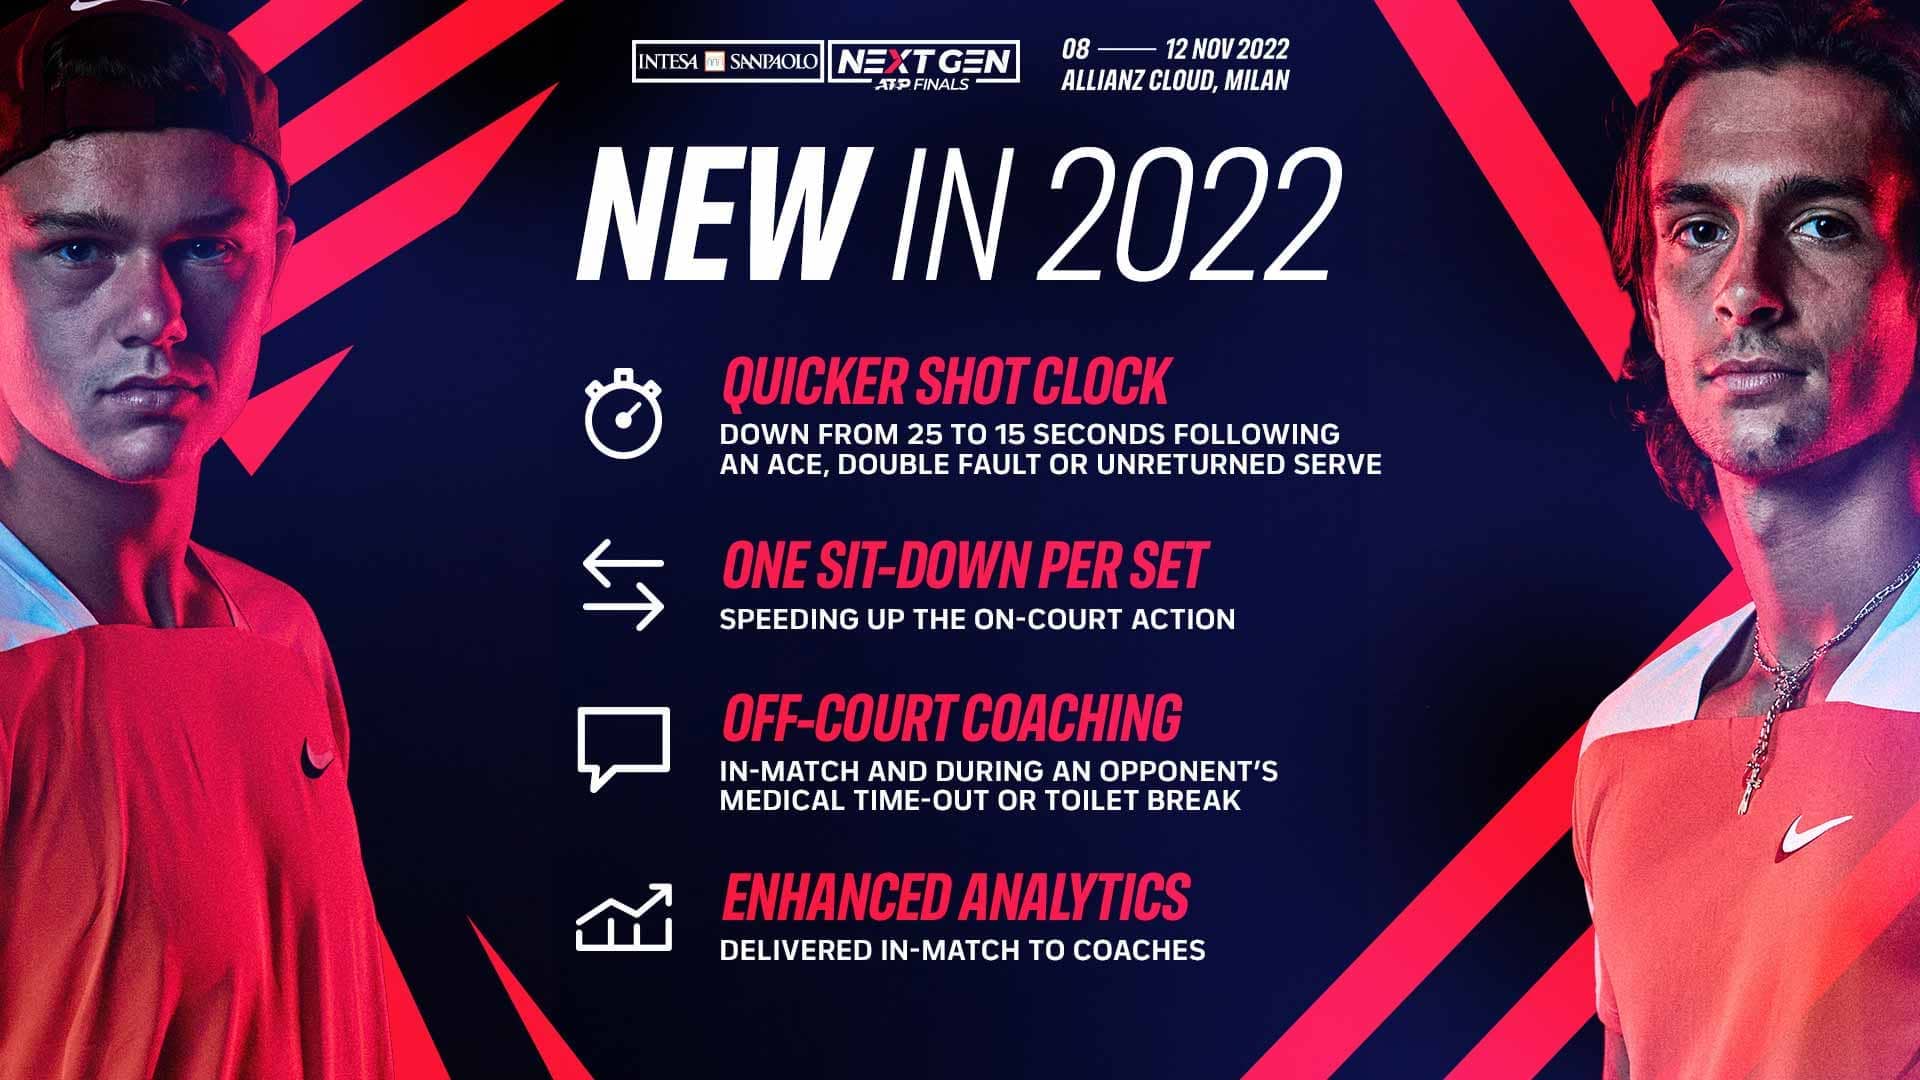 2022 Innovations & Rules News Article Next Gen ATP Finals Tennis